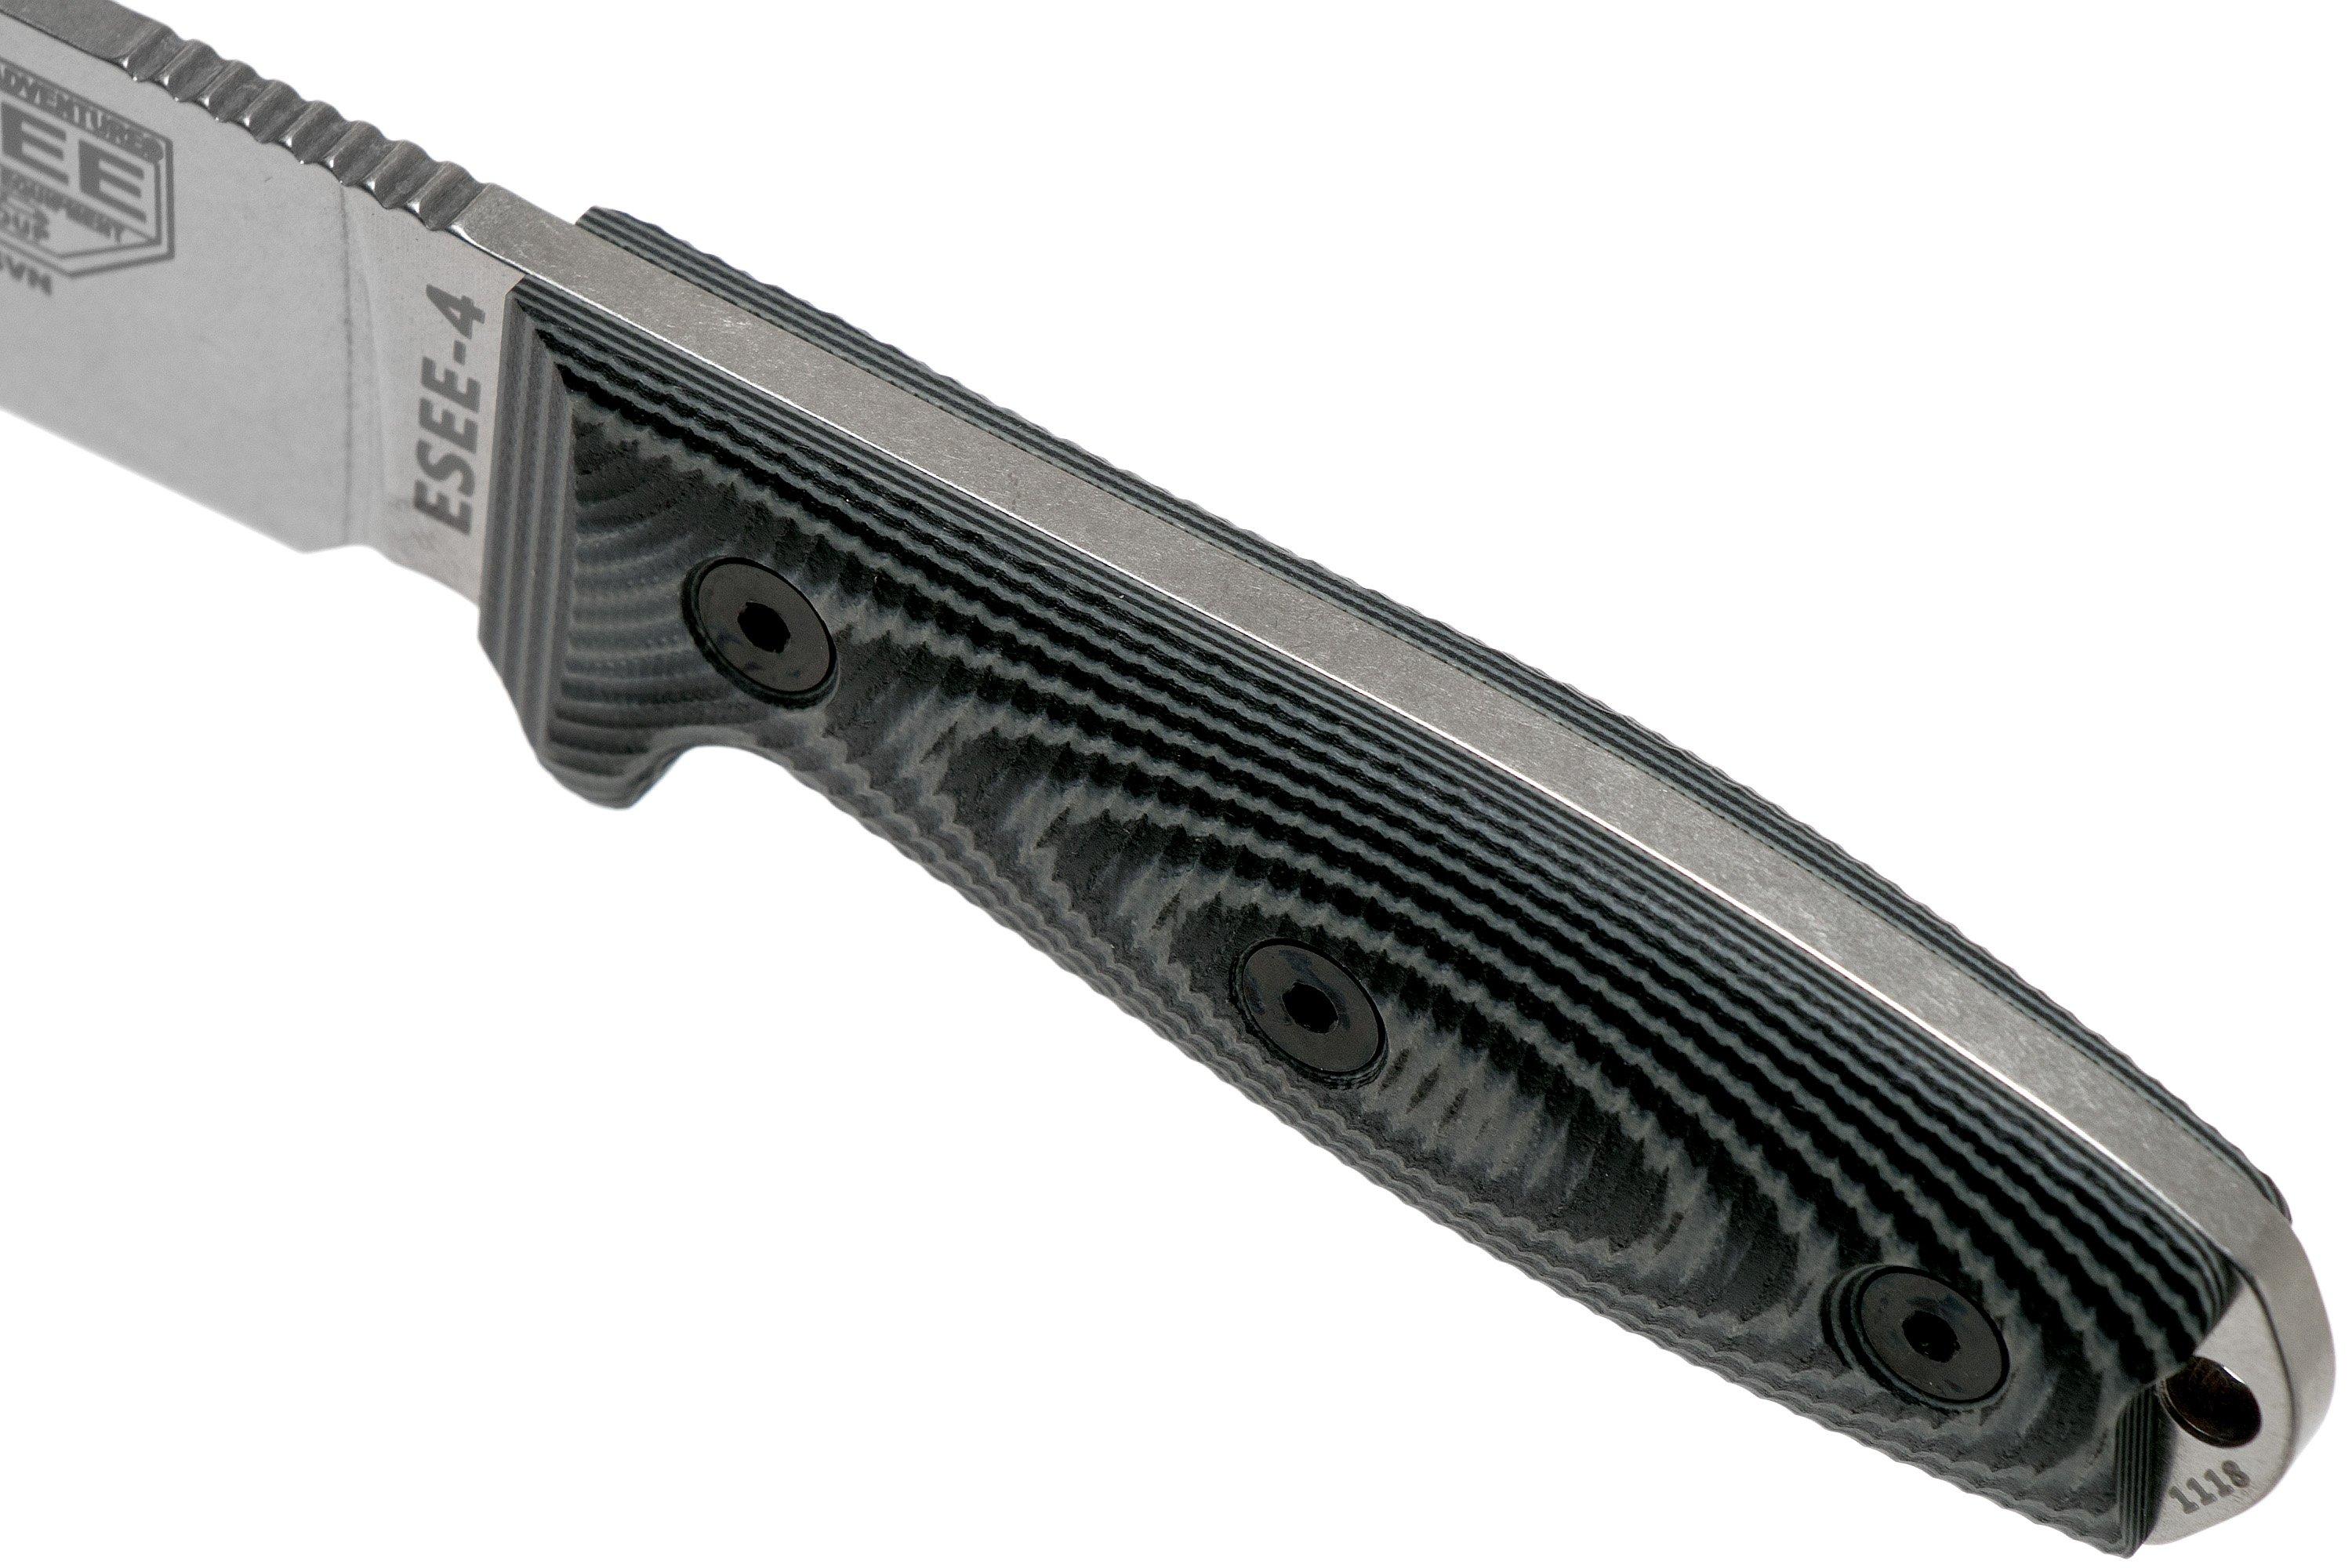 Kydexscheide Micarta-Griff Clipplatte ESEE Model 4 mit rostfreier S35V Klinge